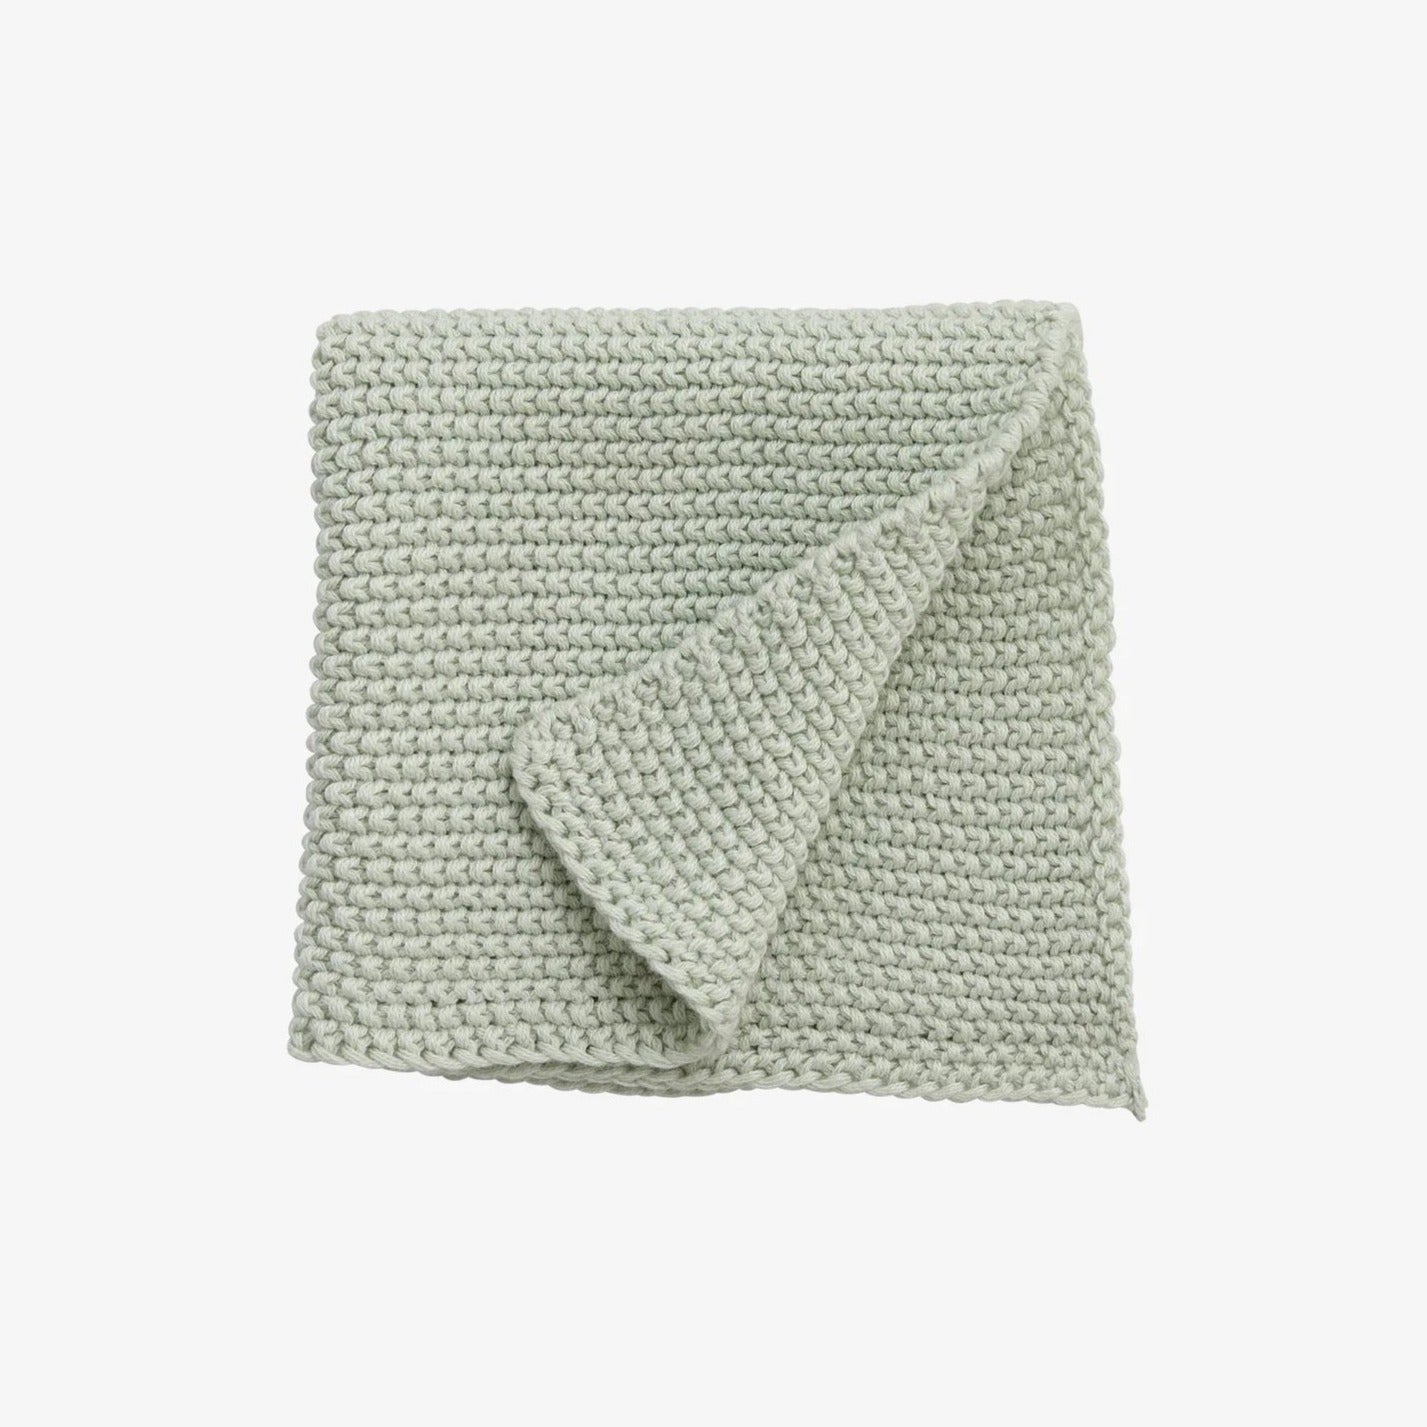 Organic cotton knit tea towel, mint